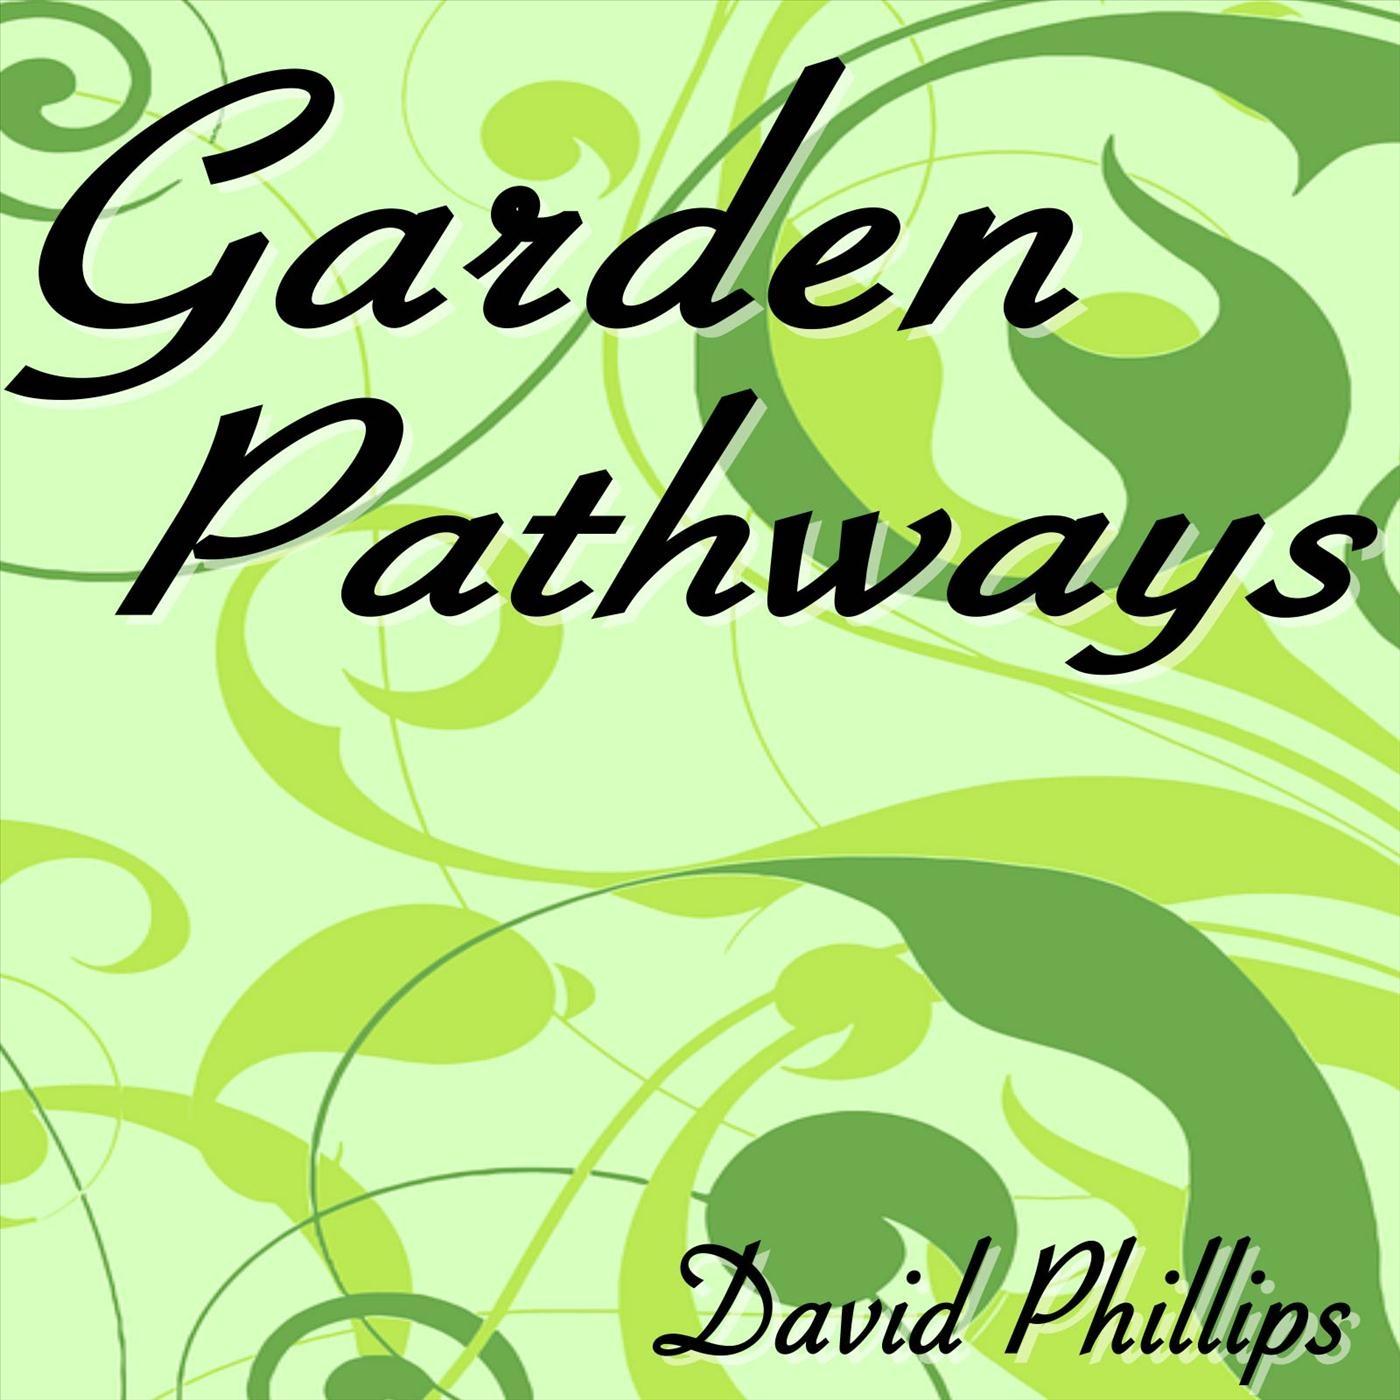 Garden Pathways